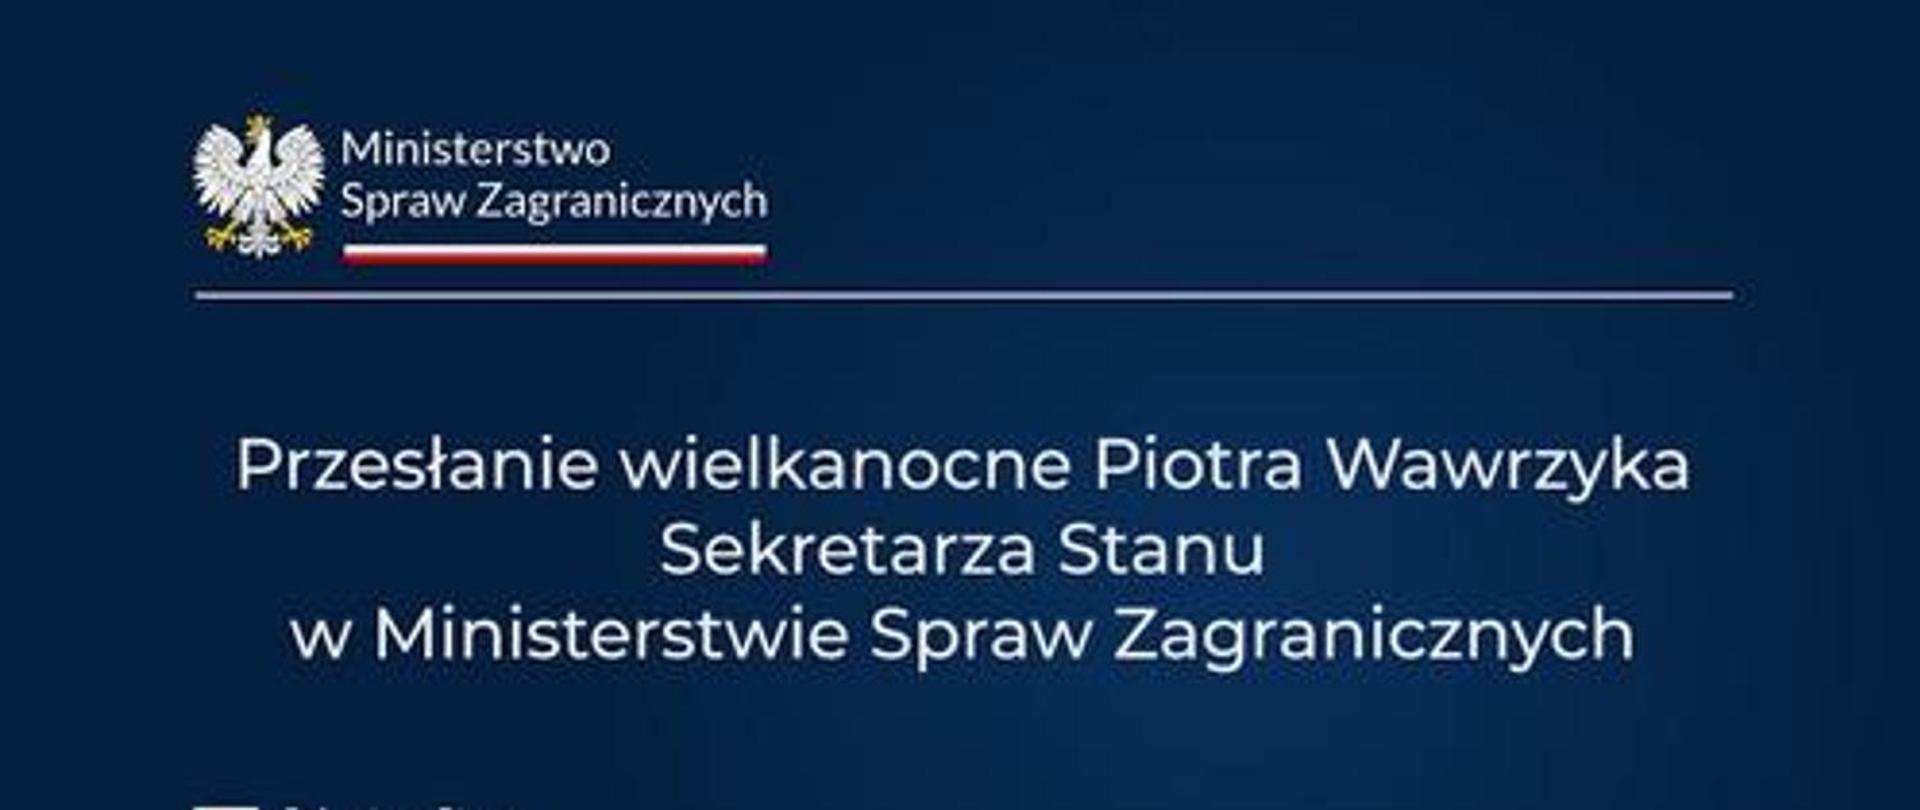 Życzenia wielkanocne wiceministra Piotra Wawrzyka